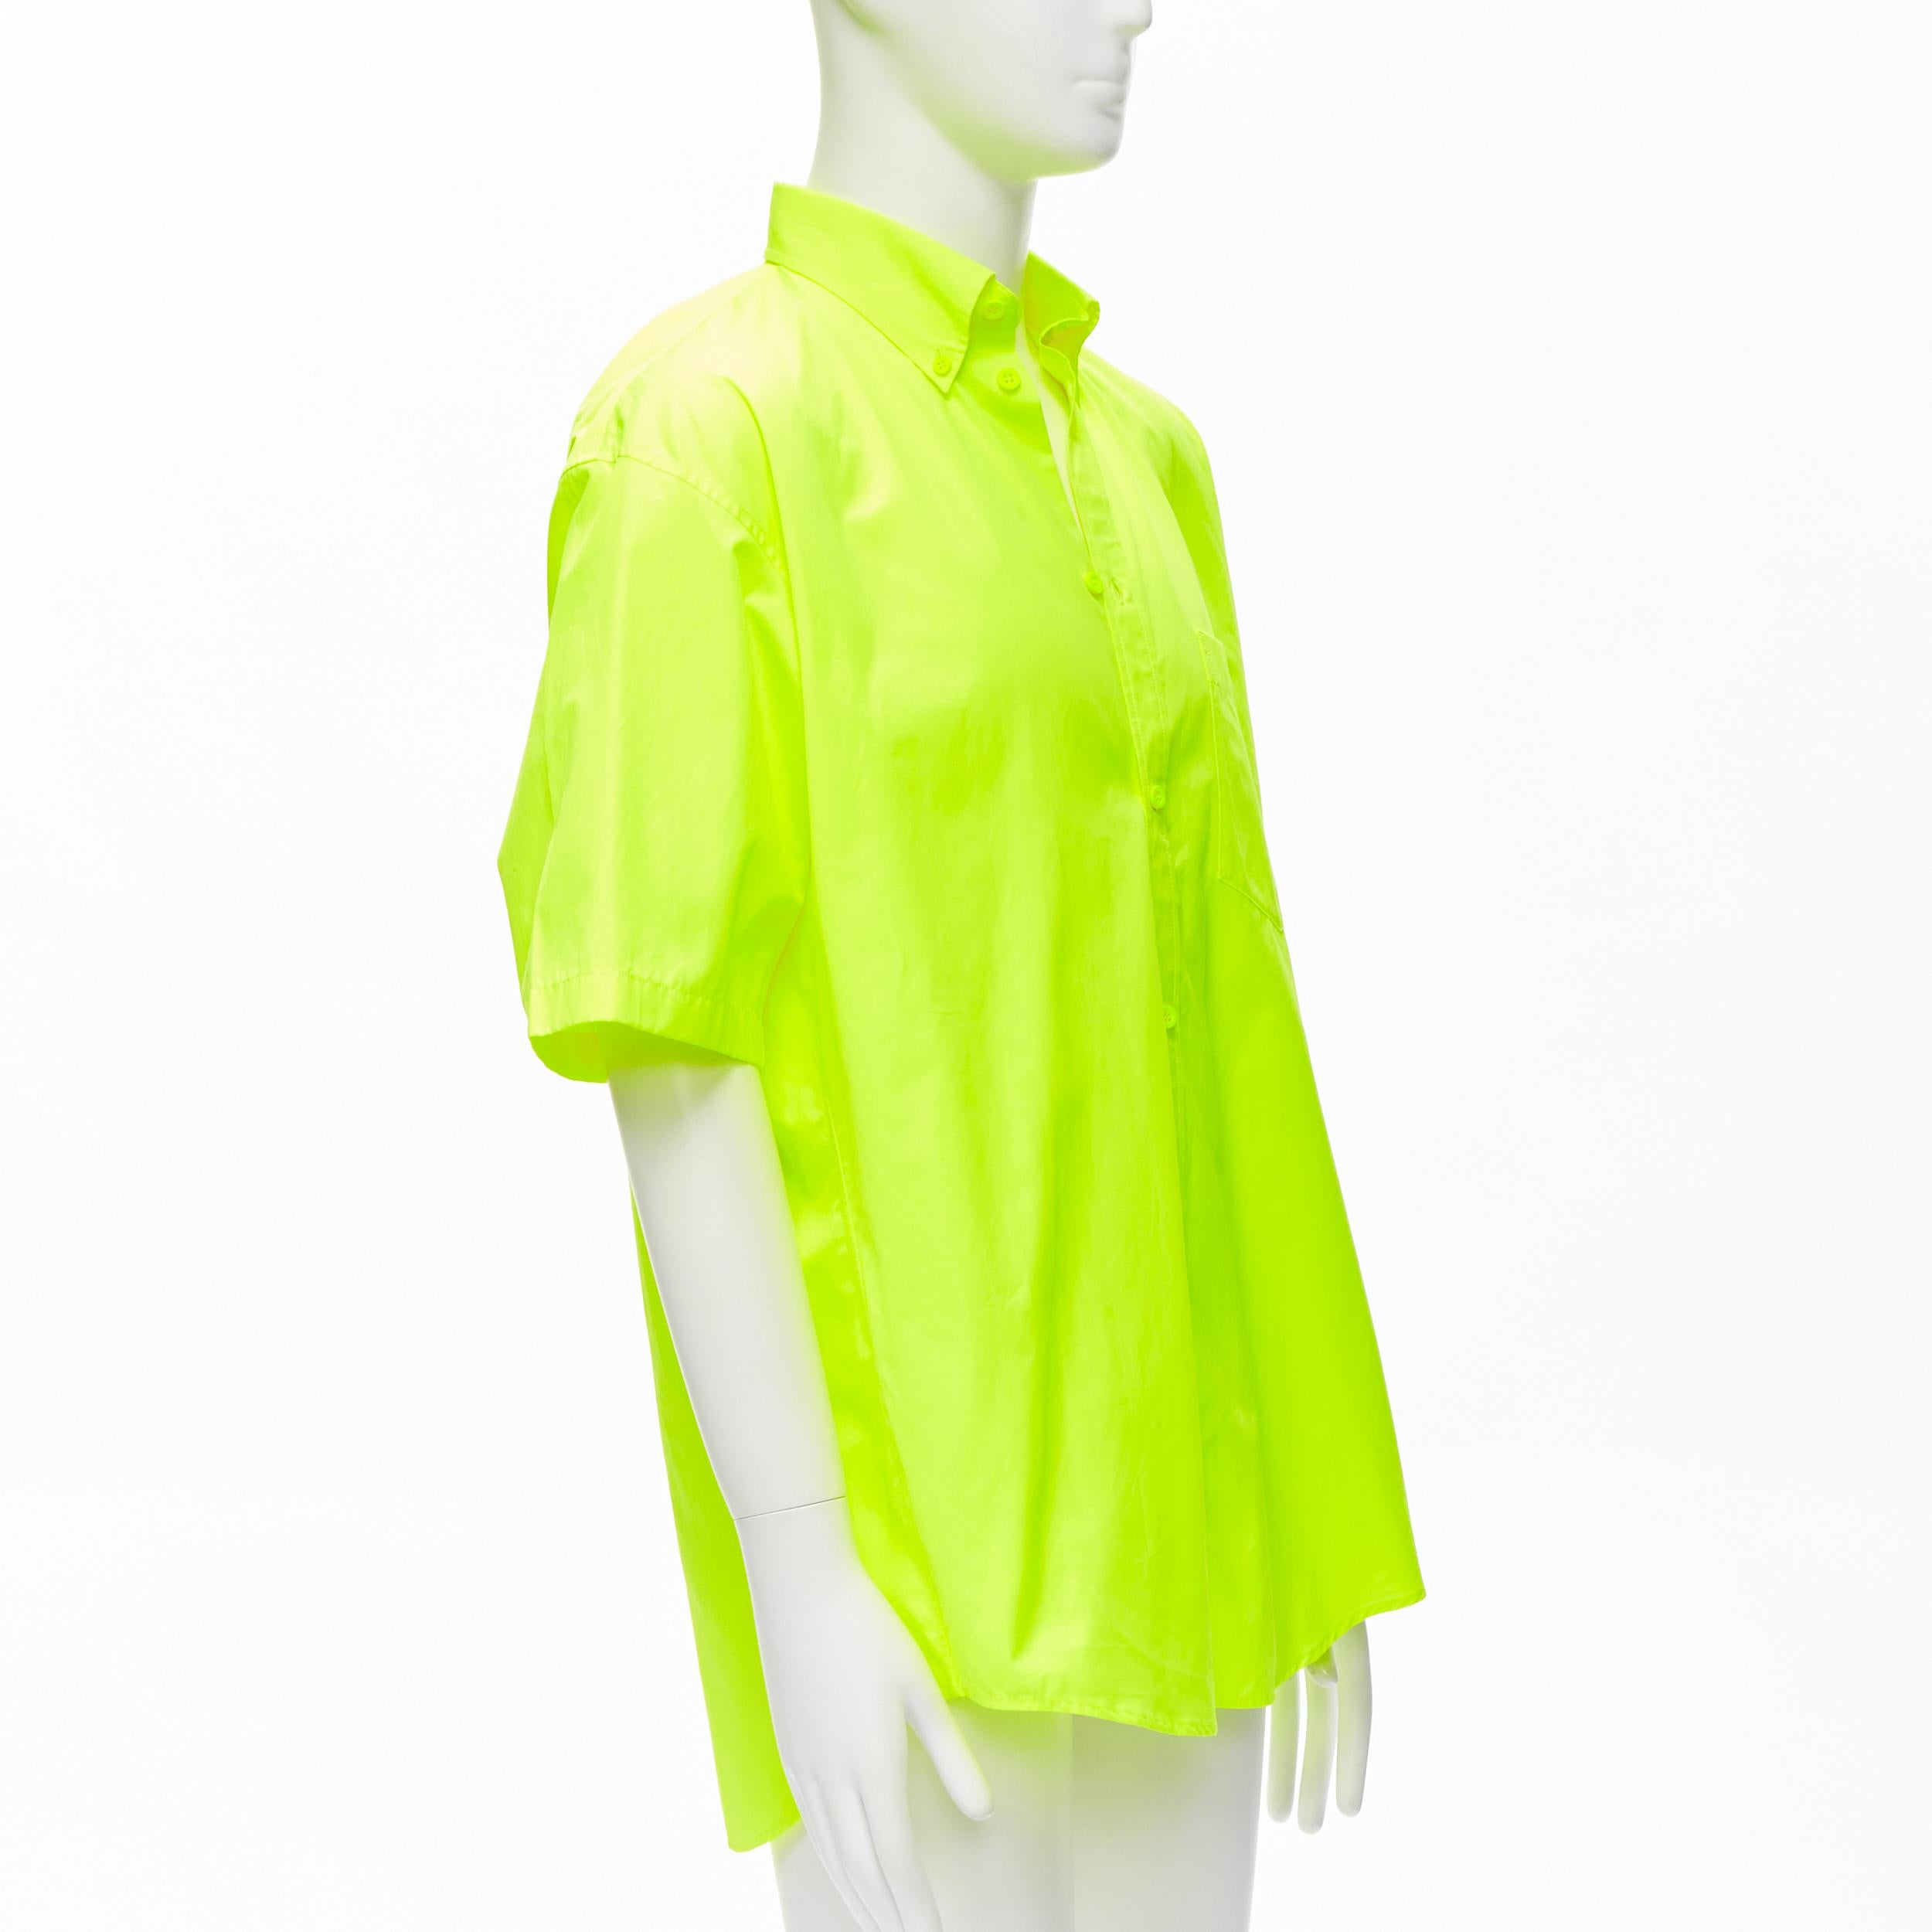 Jaune BALENCIAGA chemise surdimensionnée jaune fluo à épaules dénudées neuve EU37 XS, 2020 en vente